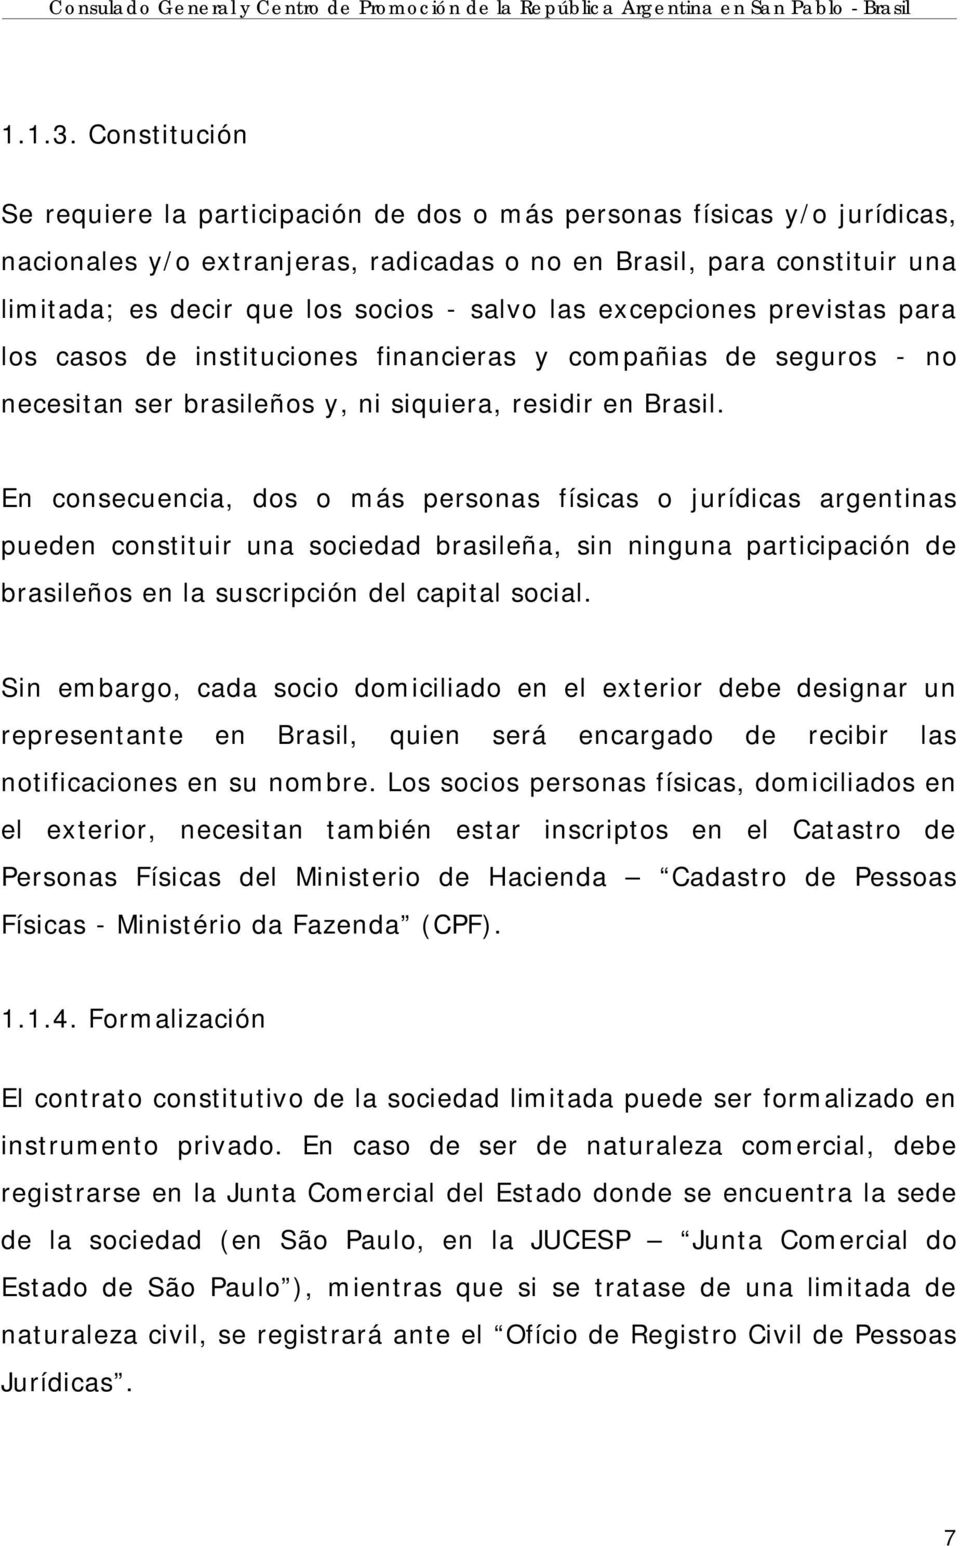 salvo las excepciones previstas para los casos de instituciones financieras y compañias de seguros - no necesitan ser brasileños y, ni siquiera, residir en Brasil.